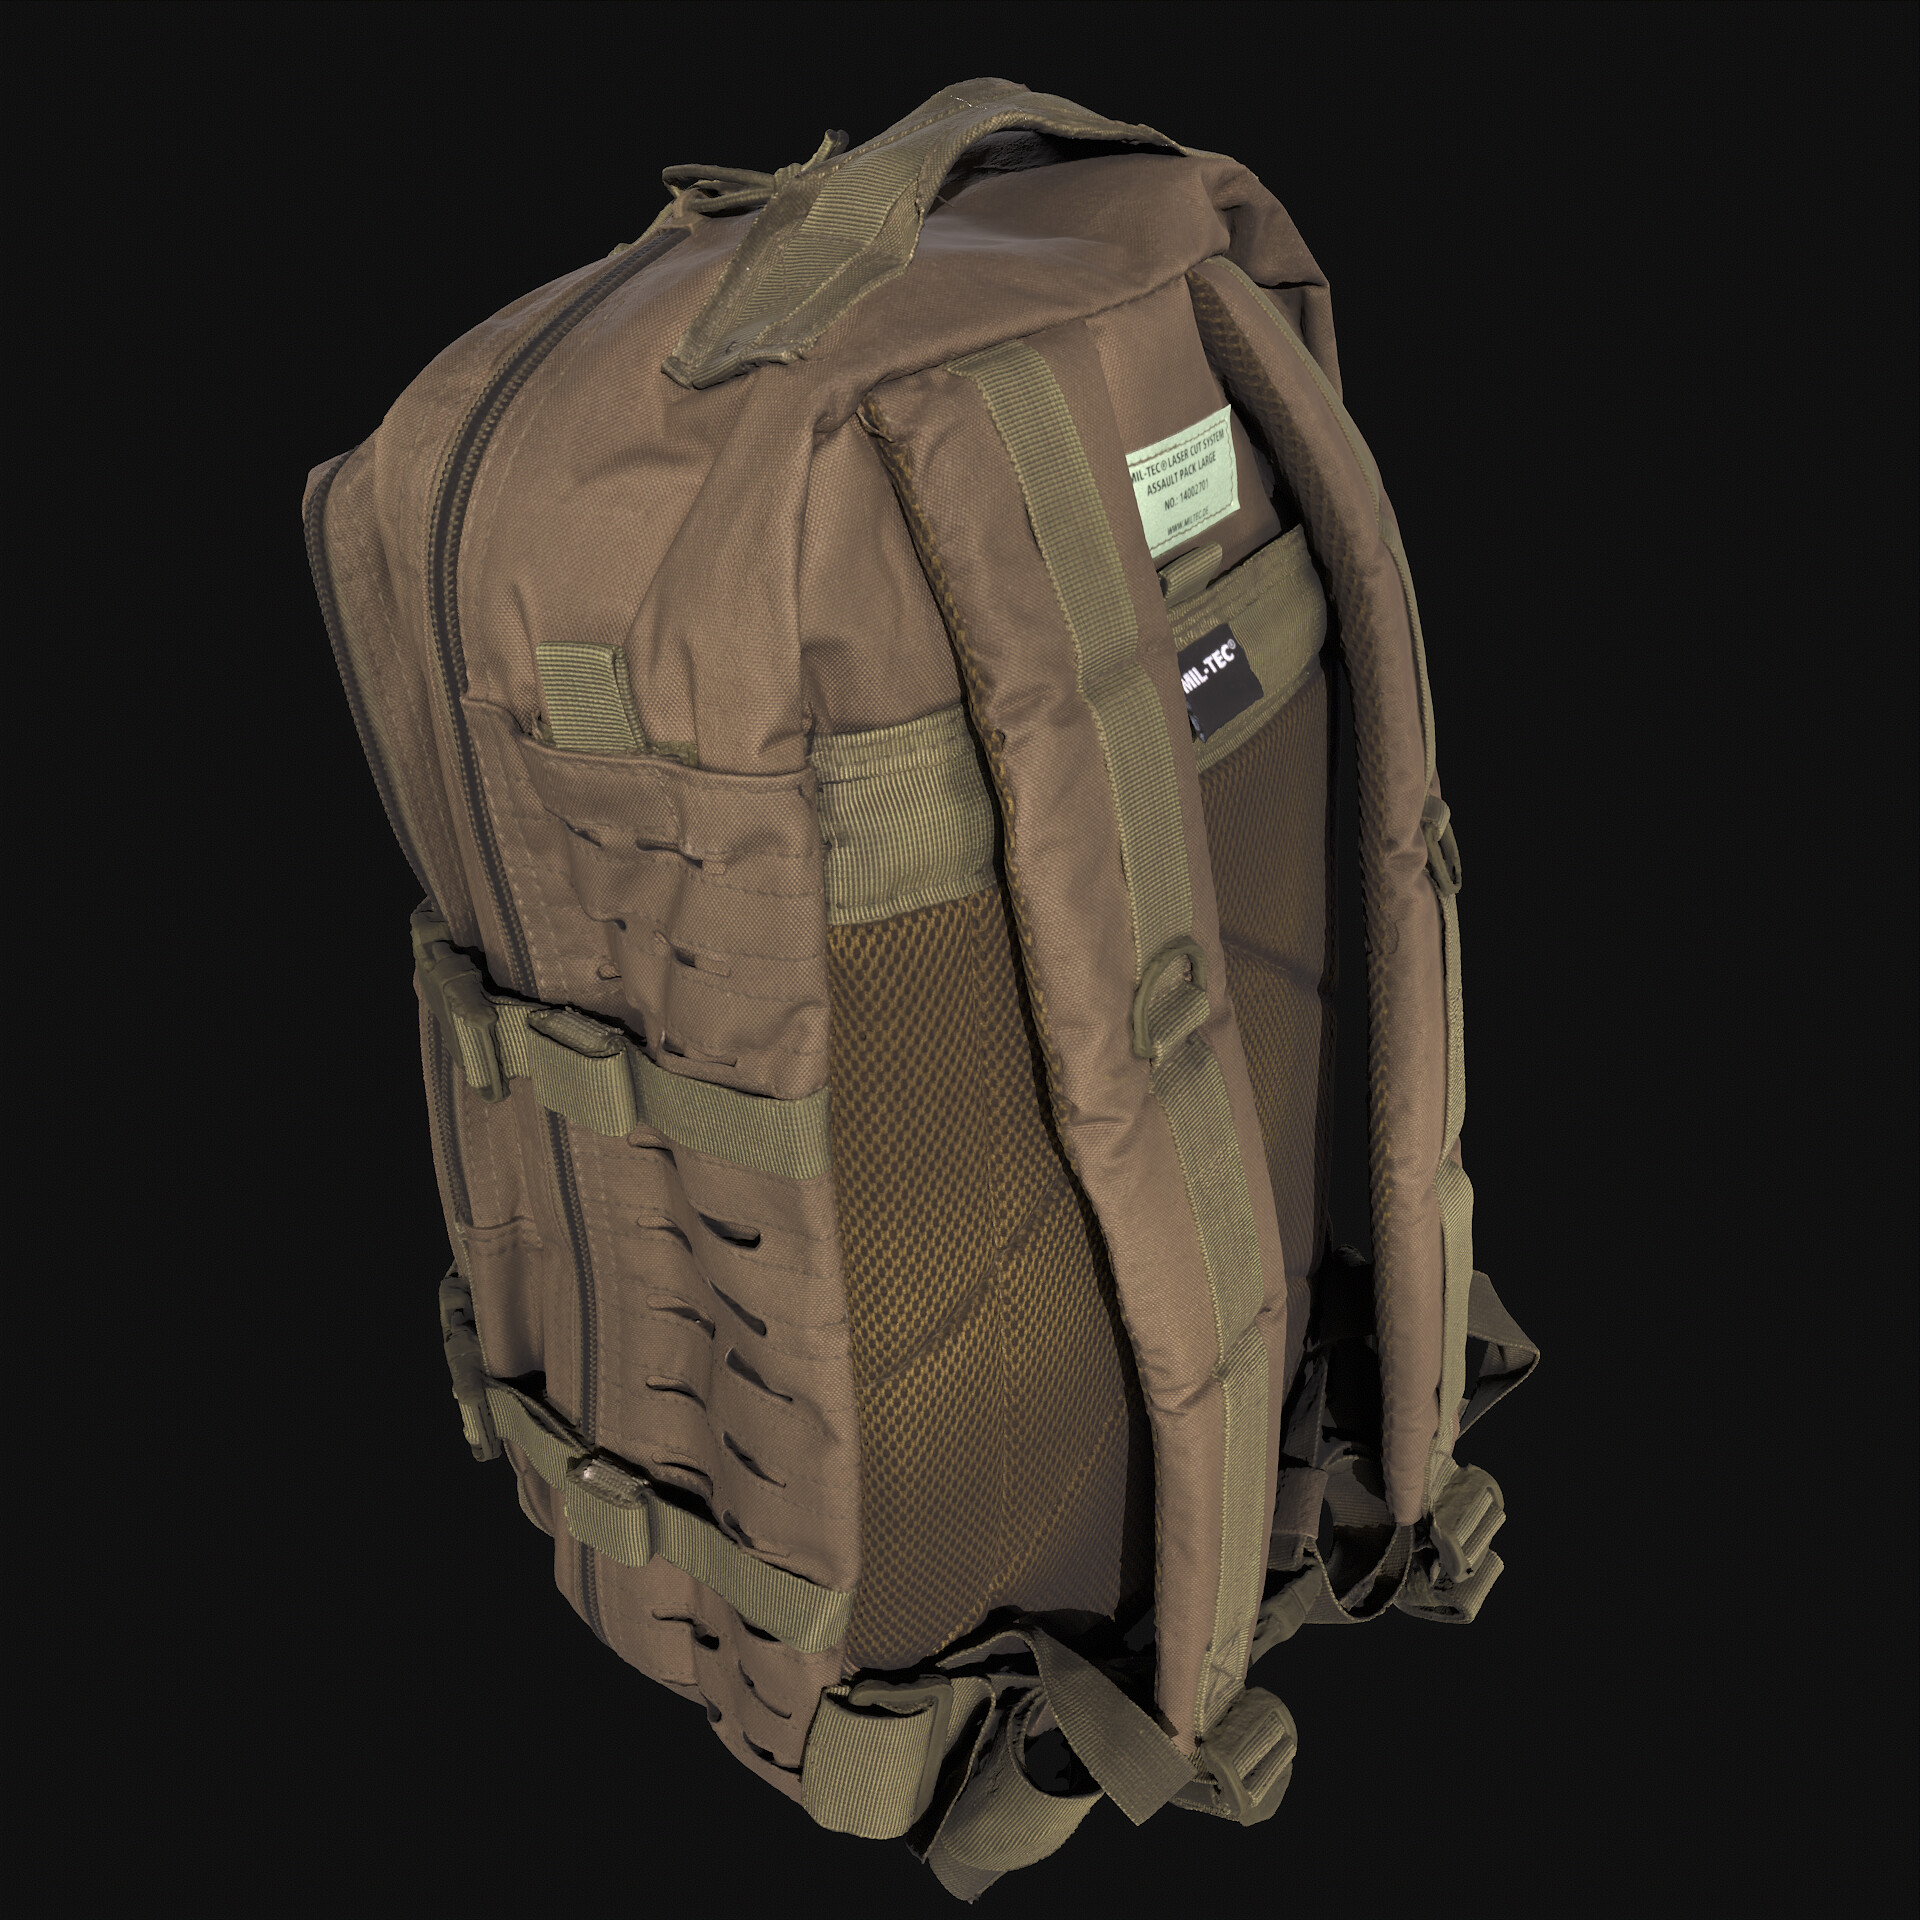 ArtStation - Supreme X LV Backpack